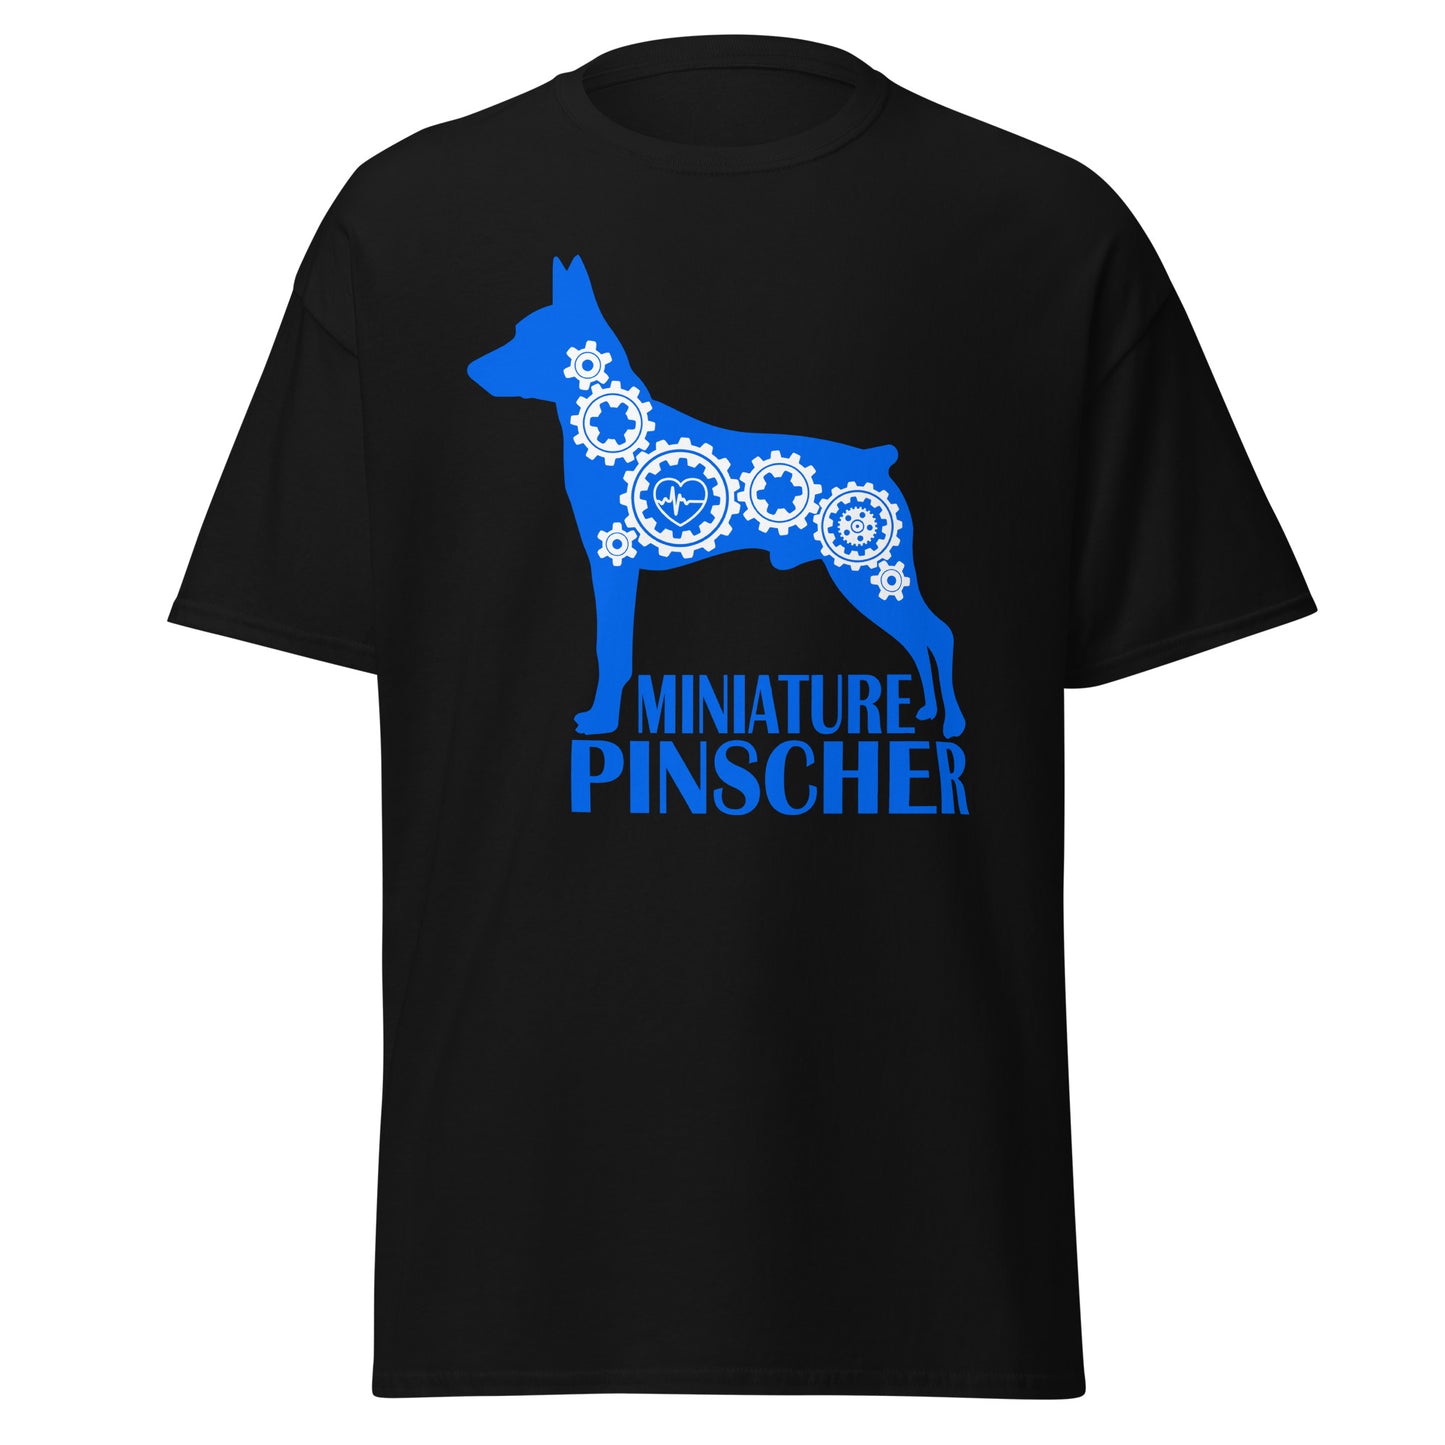 Miniature Pinscher Bionic men’s black t-shirt by Dog Artistry.